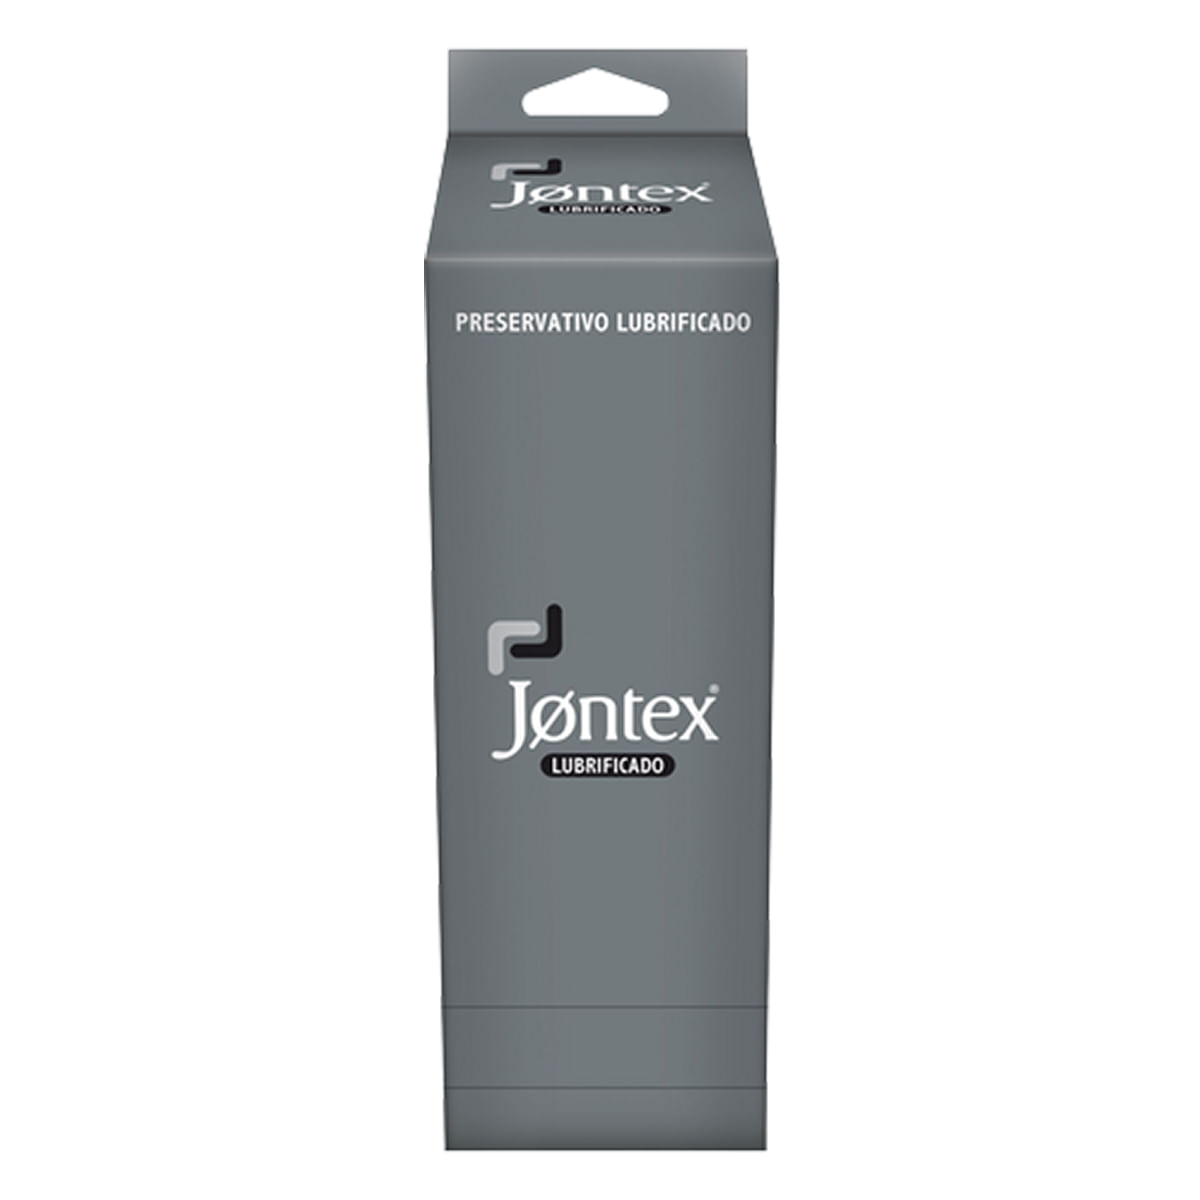 Preservativos Lubrificados Kit com 36 unidades Jontex